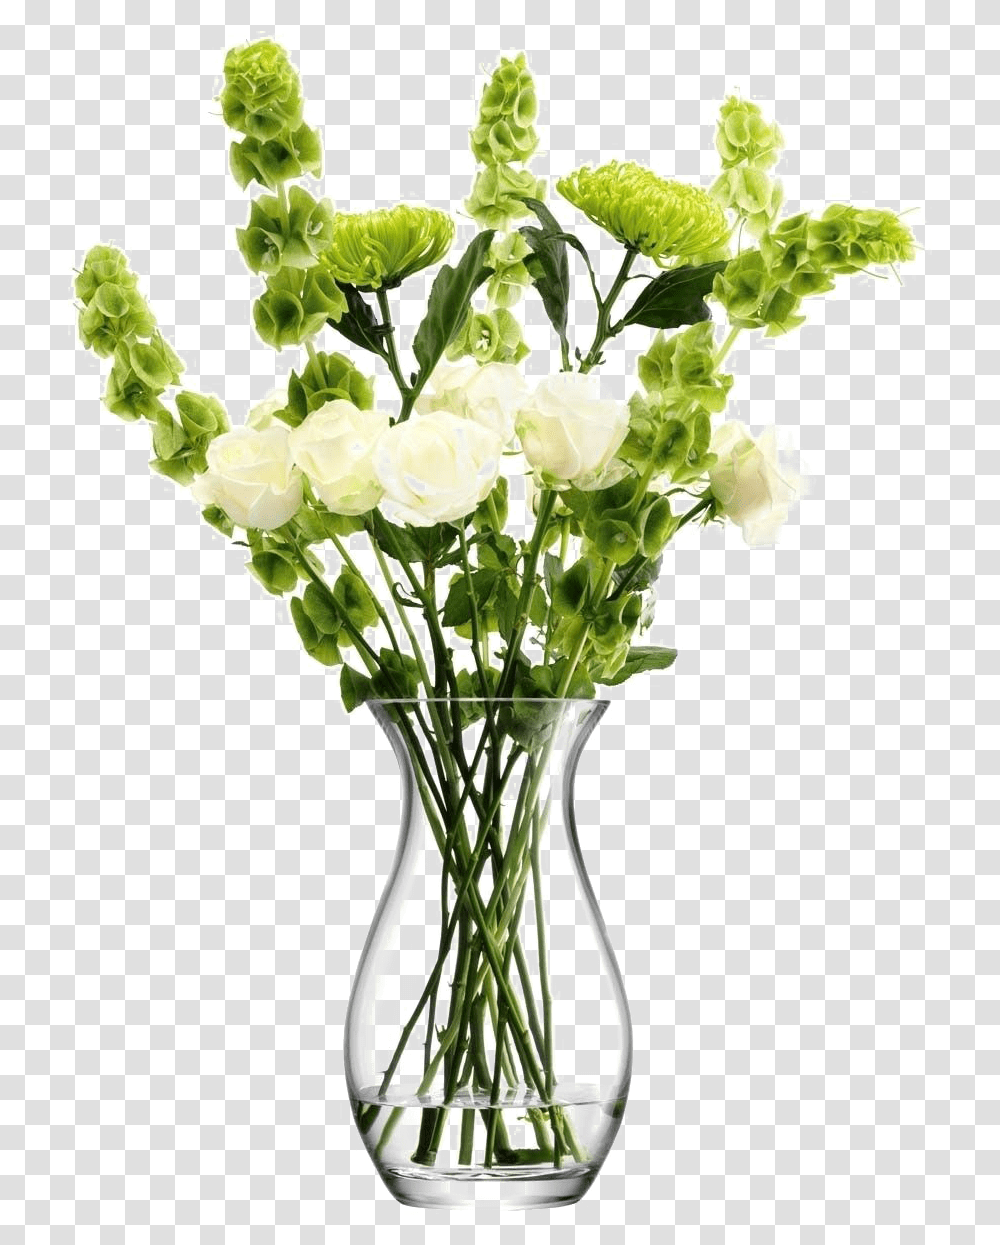 Flower Vase Image Background Flower Vase, Plant, Blossom, Jar, Pottery Transparent Png